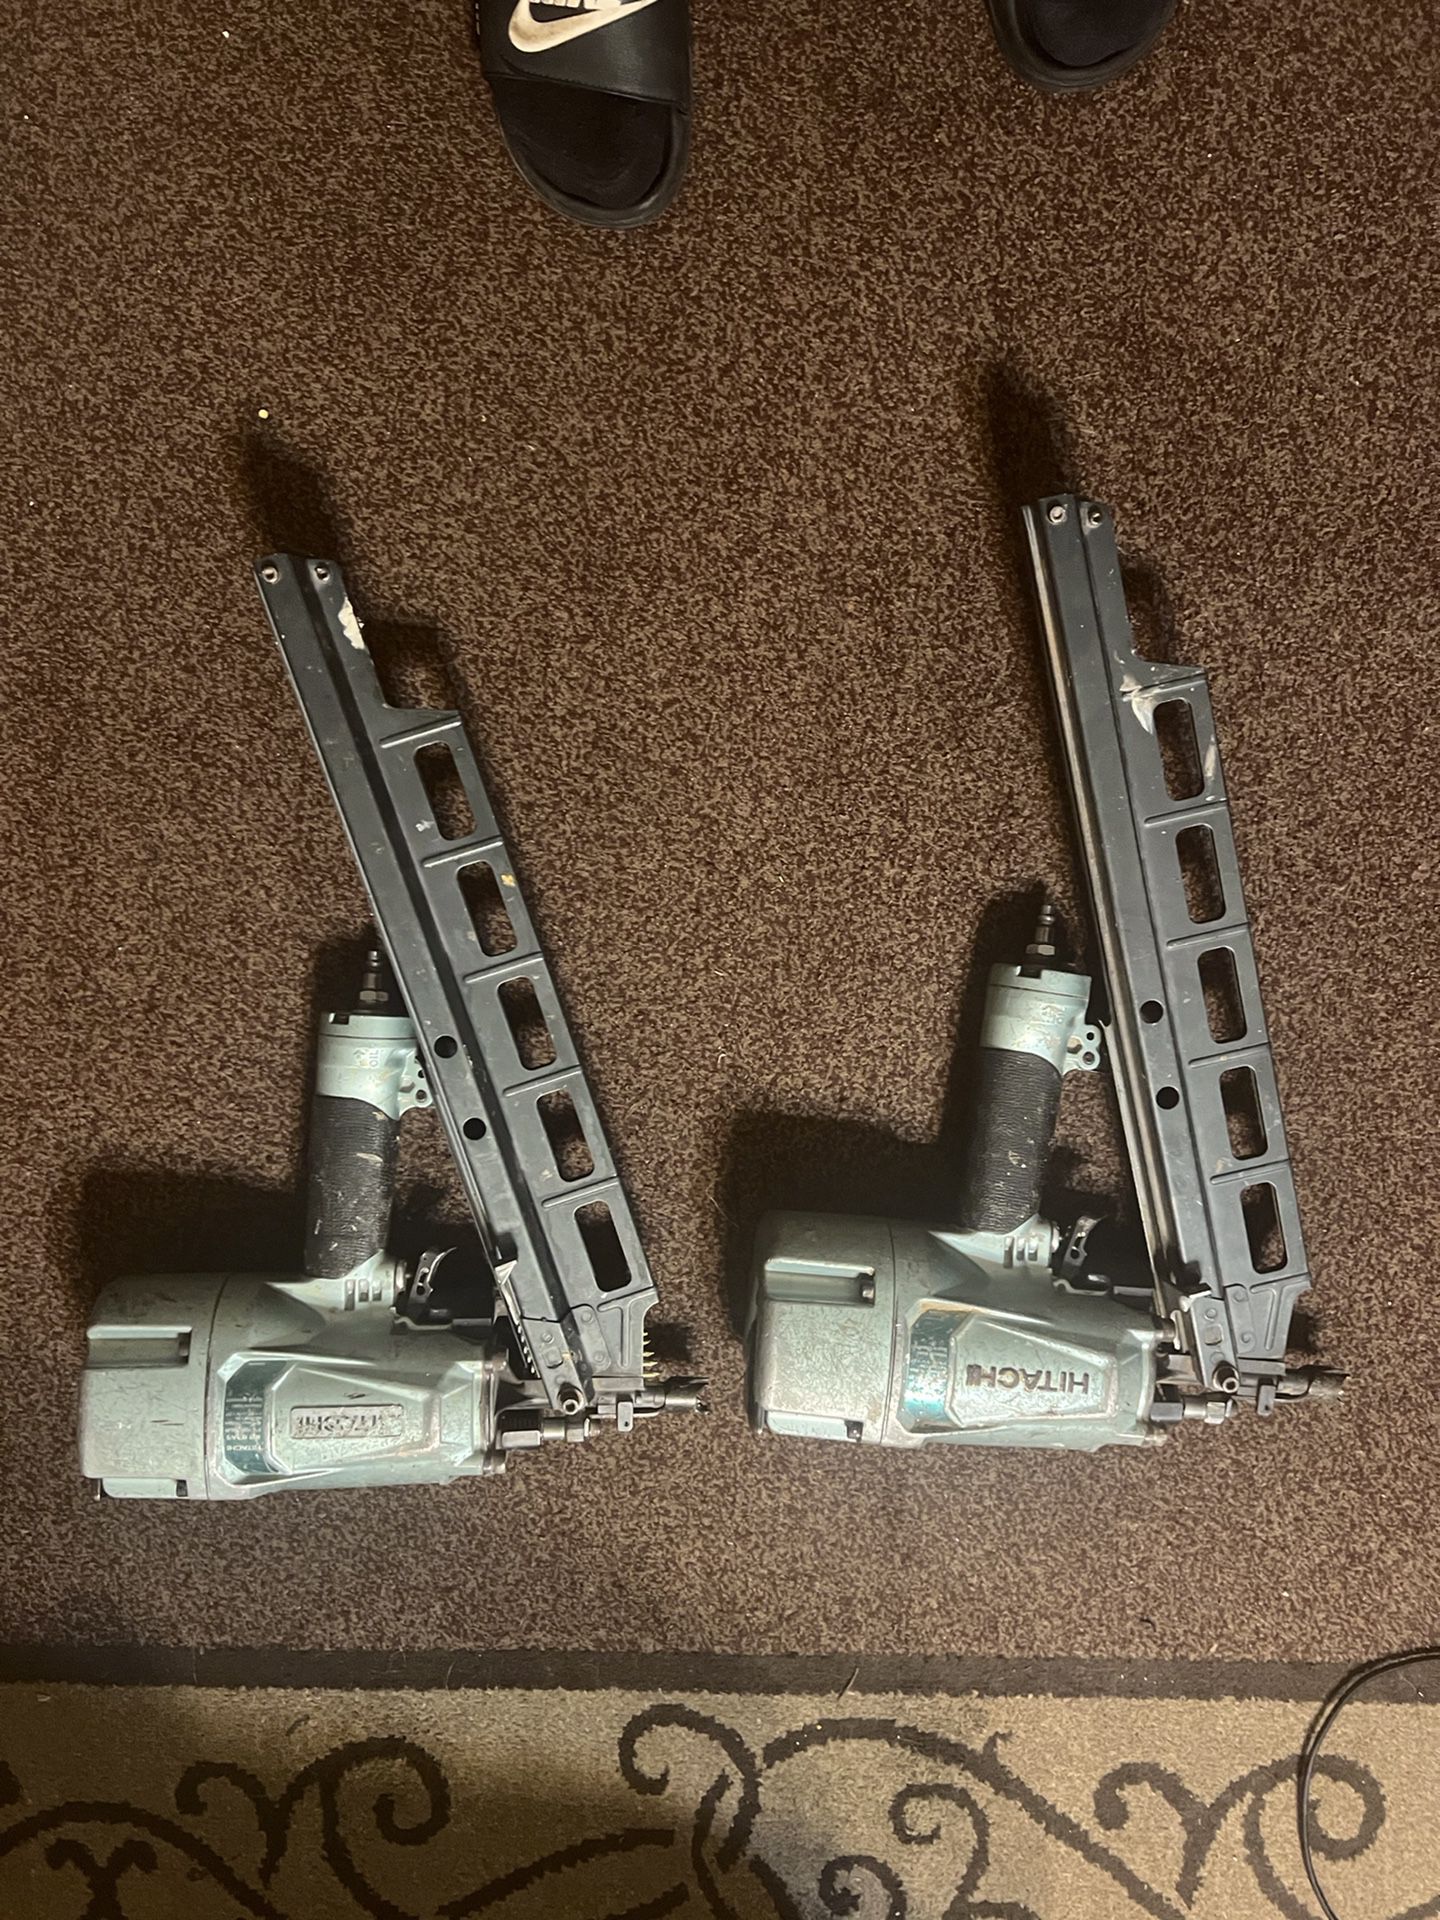 2-hitachi framing guns con regulador i automaticas